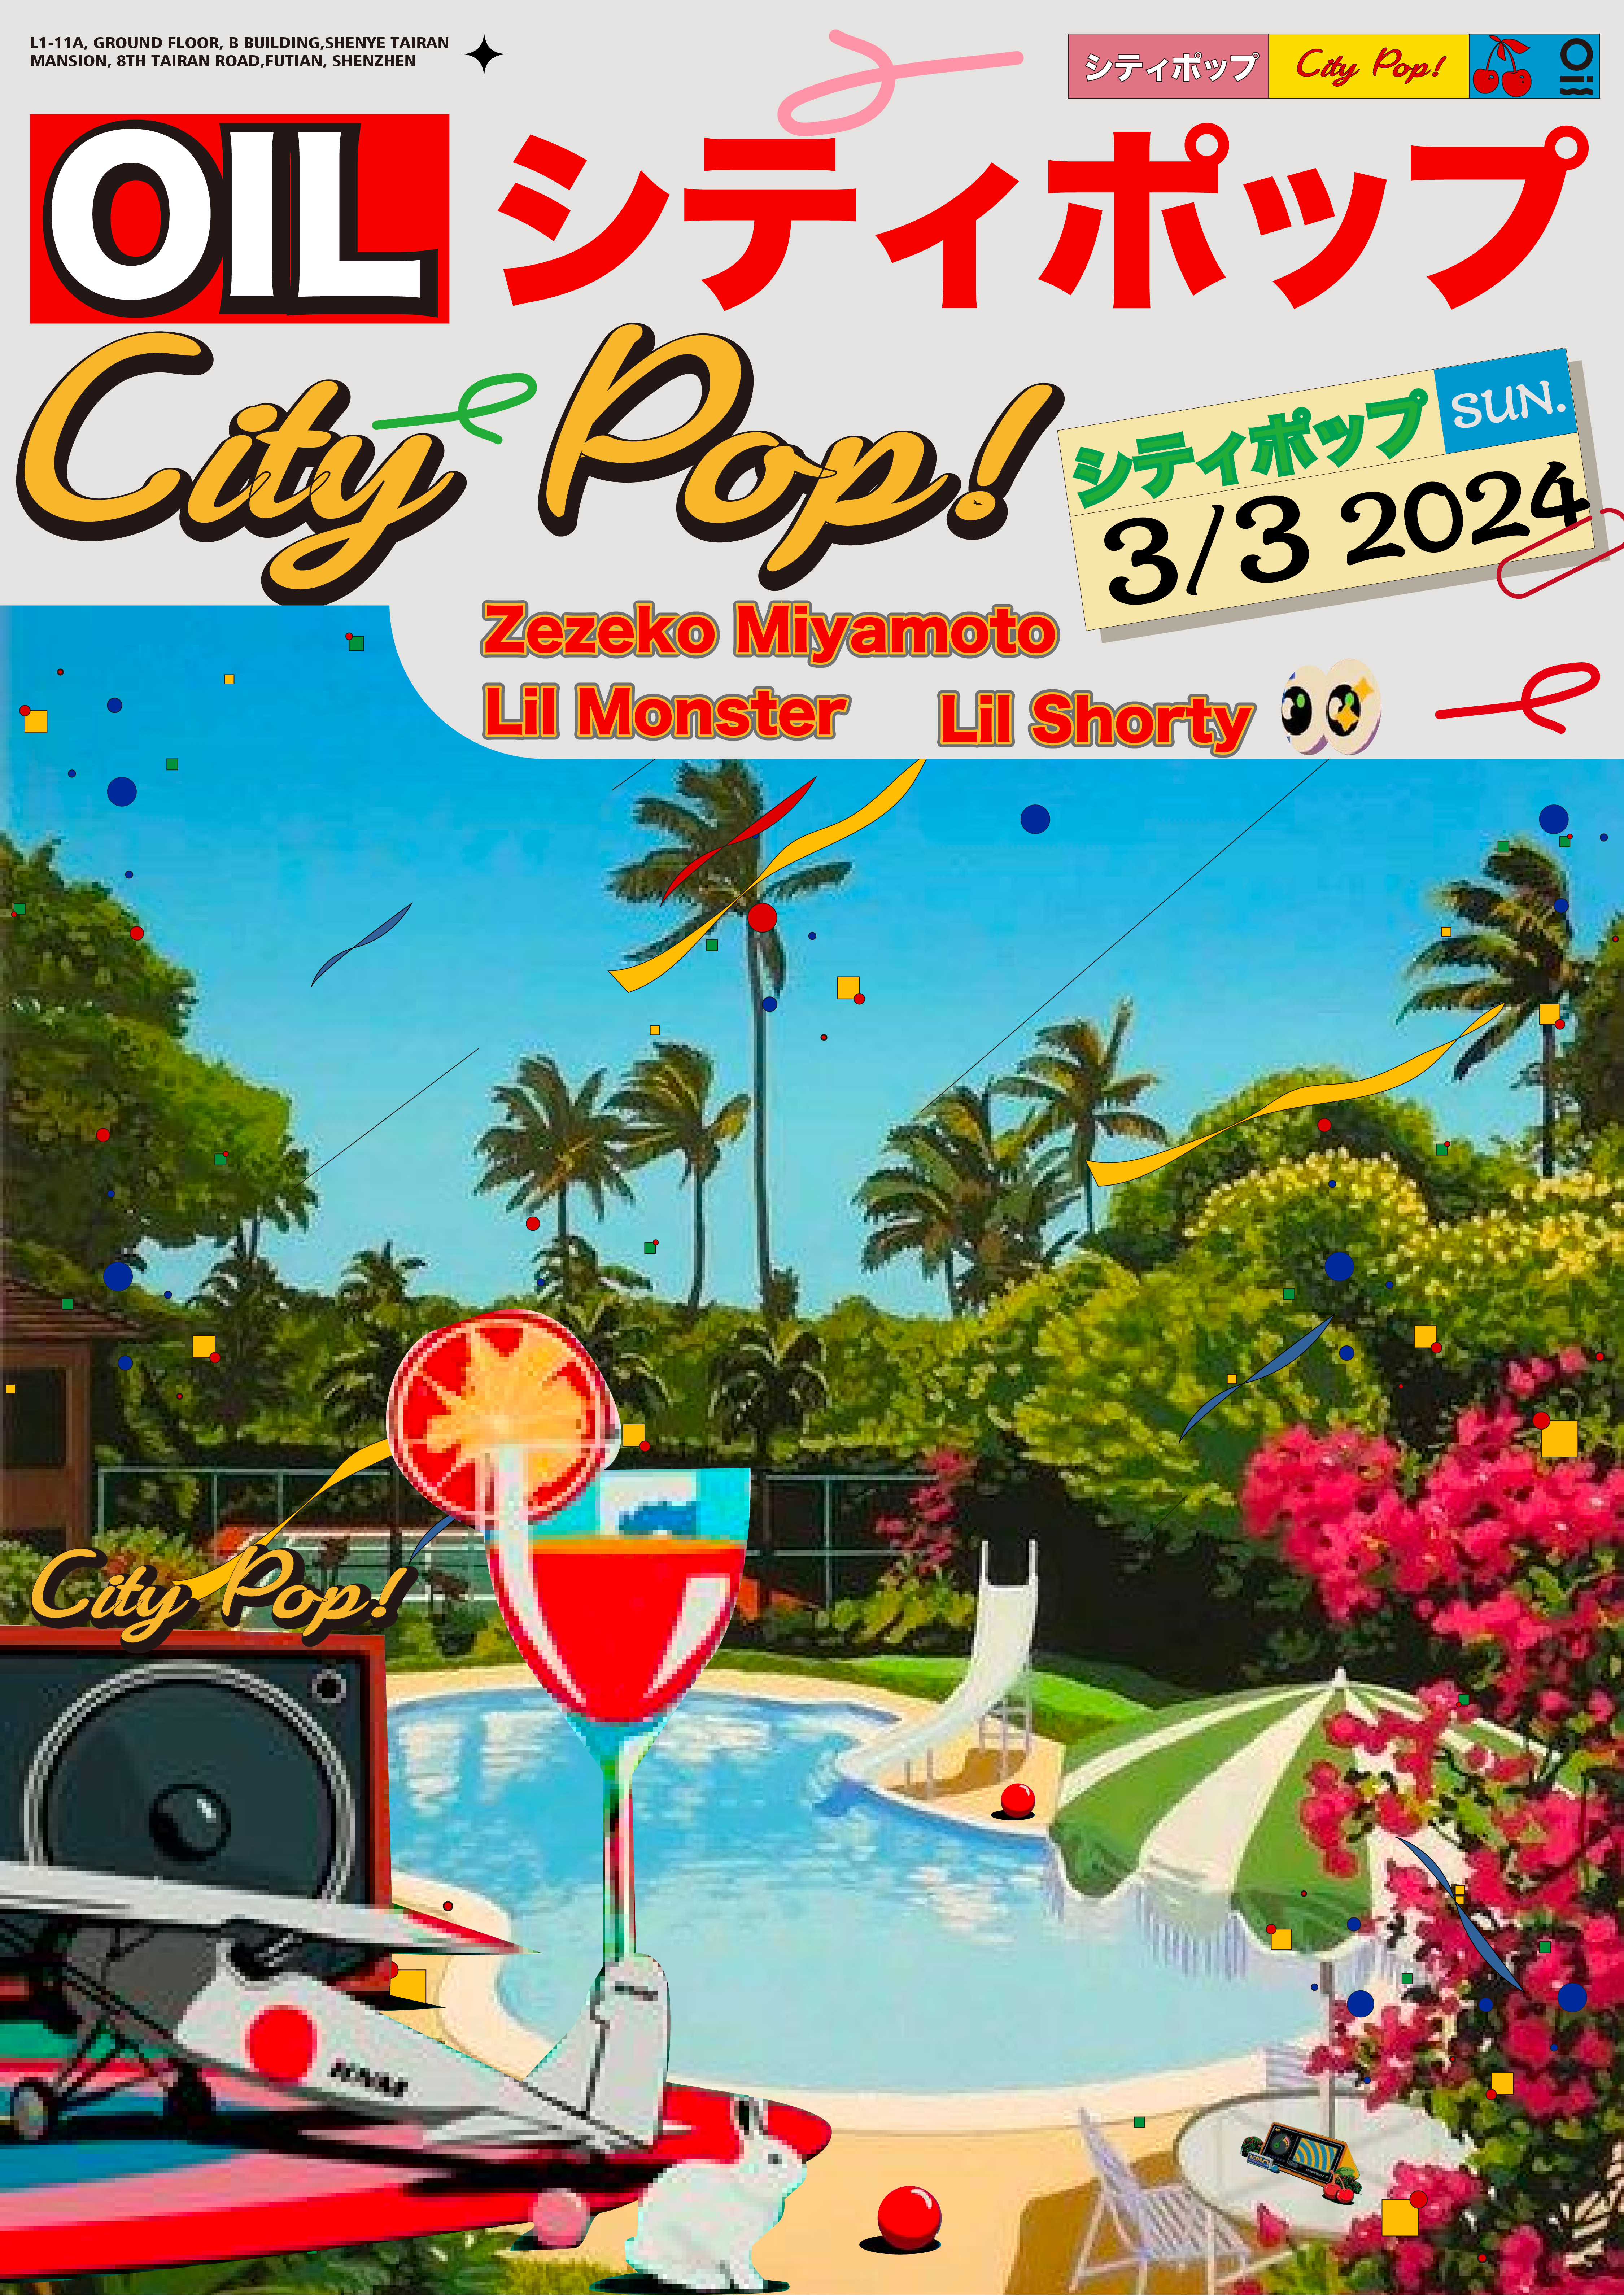 シティポップ- City Pop at OIL Club, Shenzhen